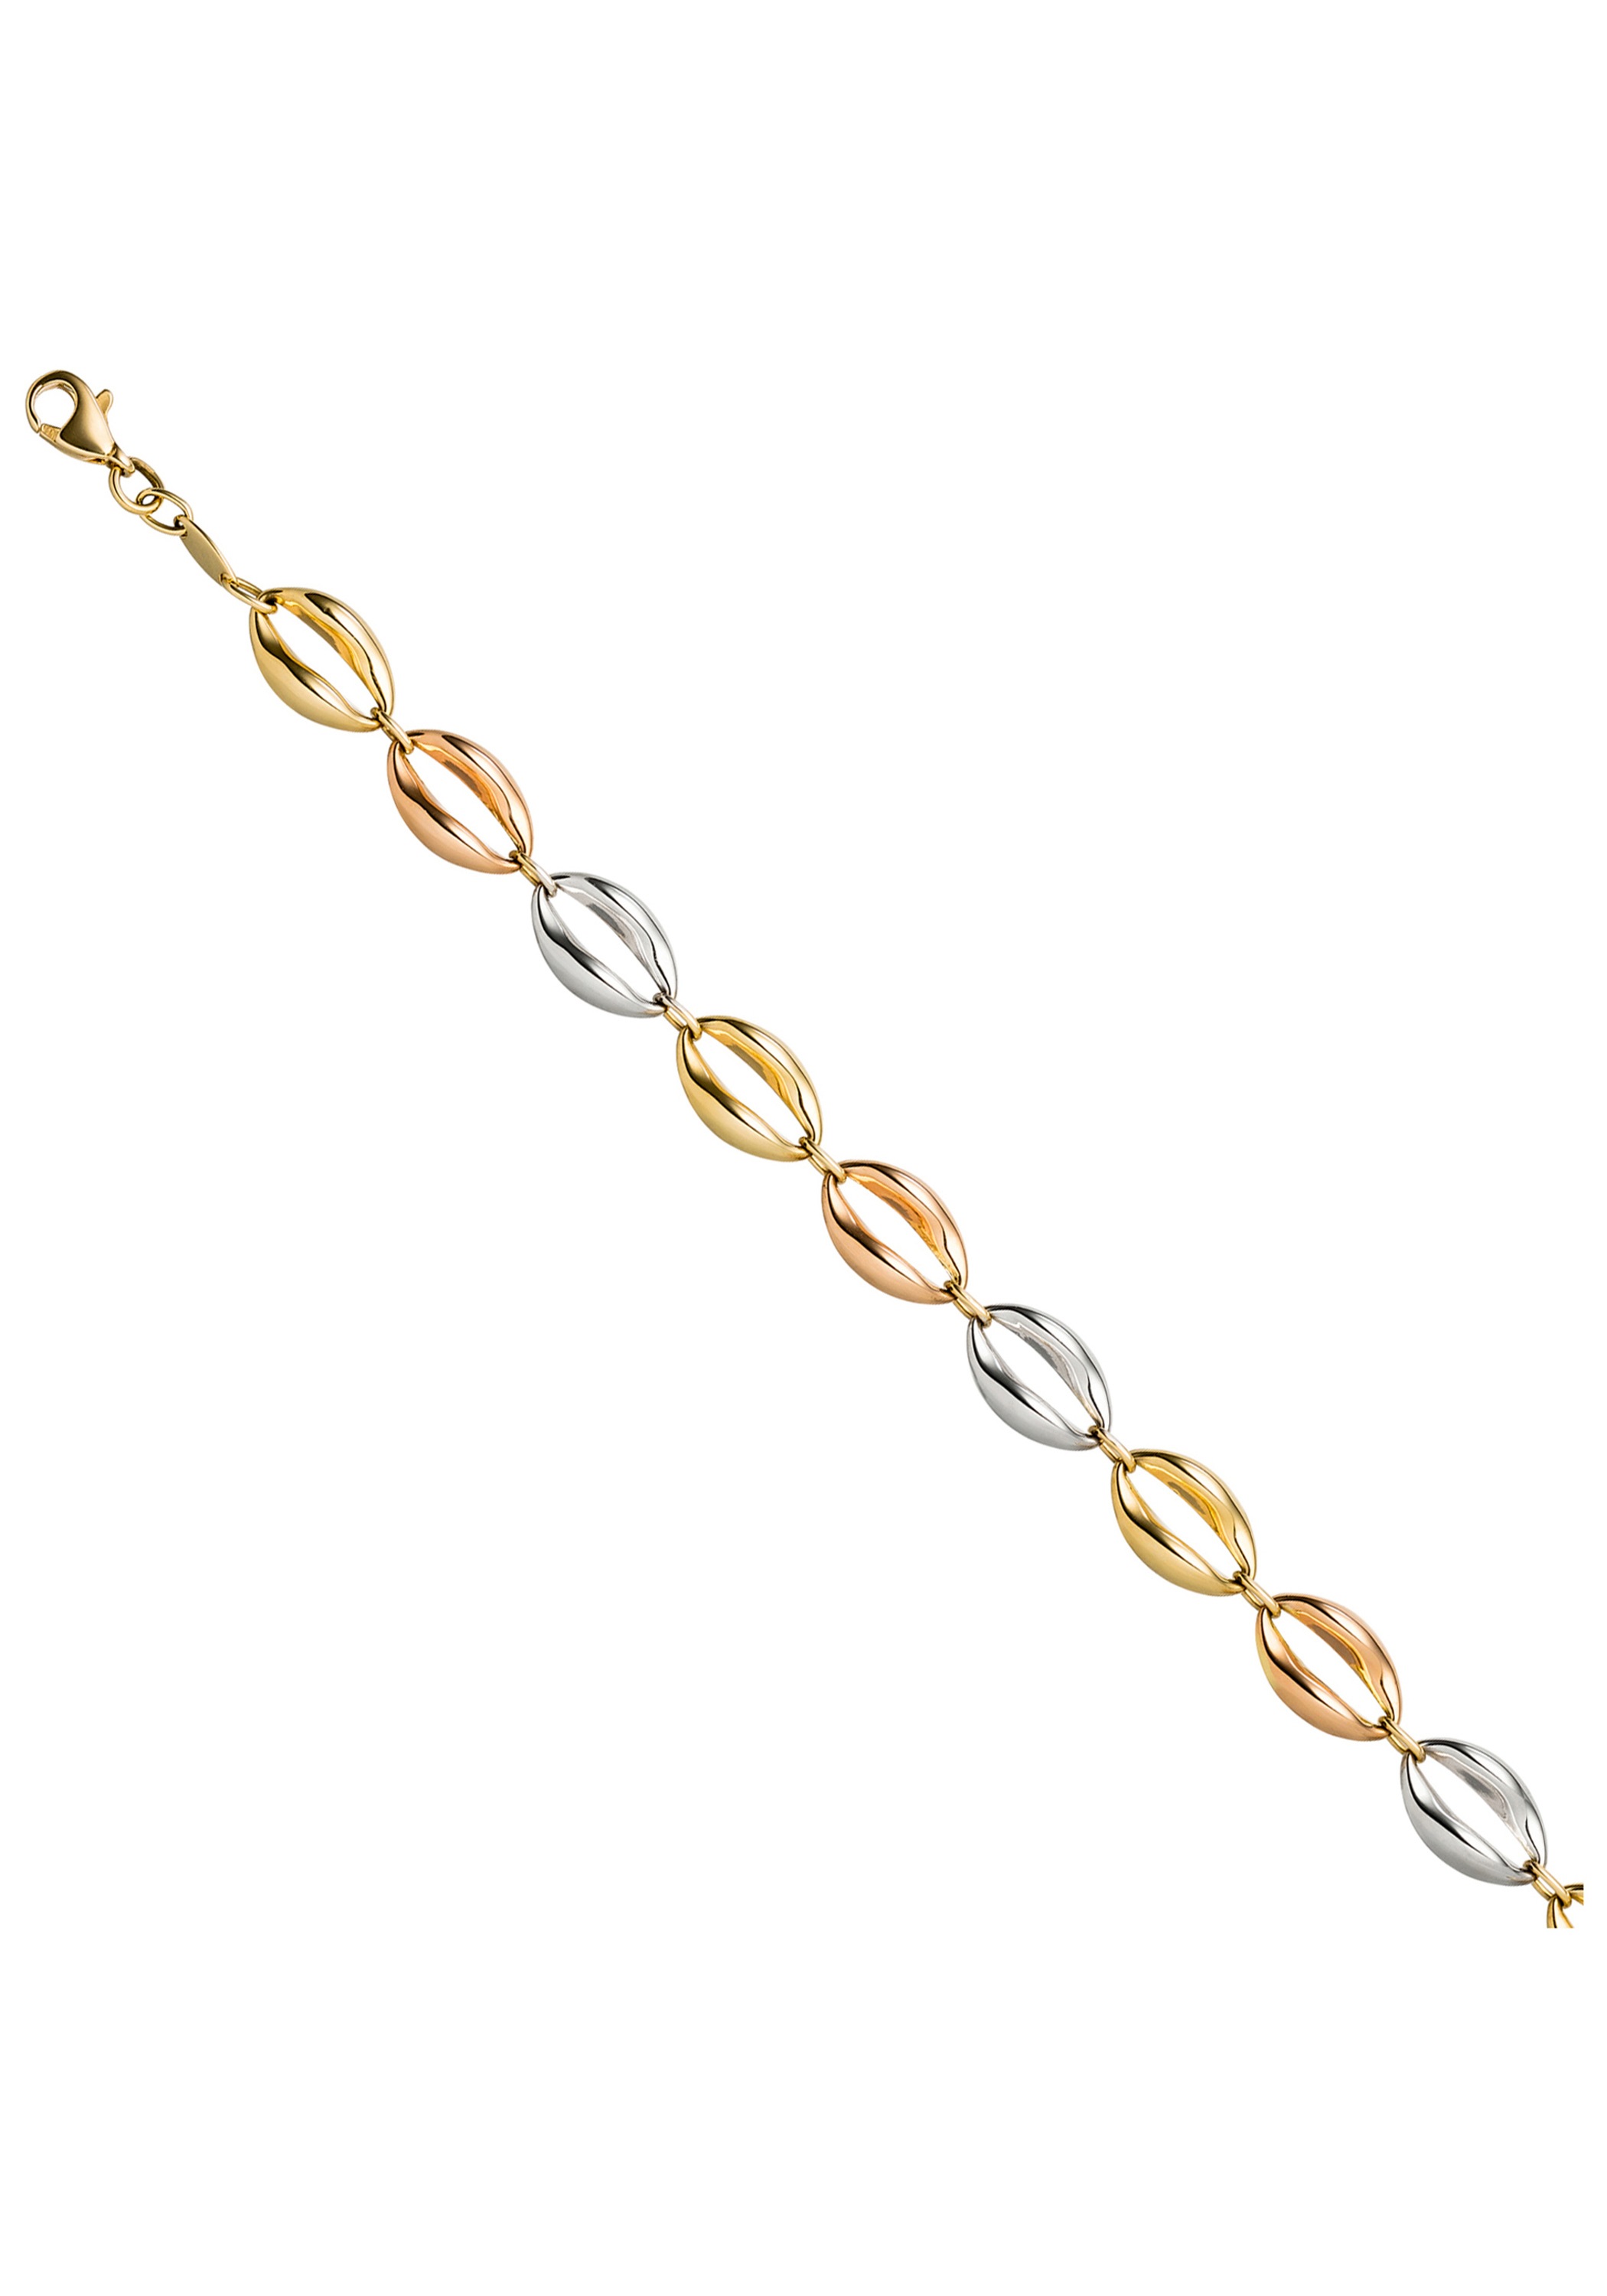 Jobo Women's Cord Bracelet 585 Yellow Gold 19 cm Bracelet Gold